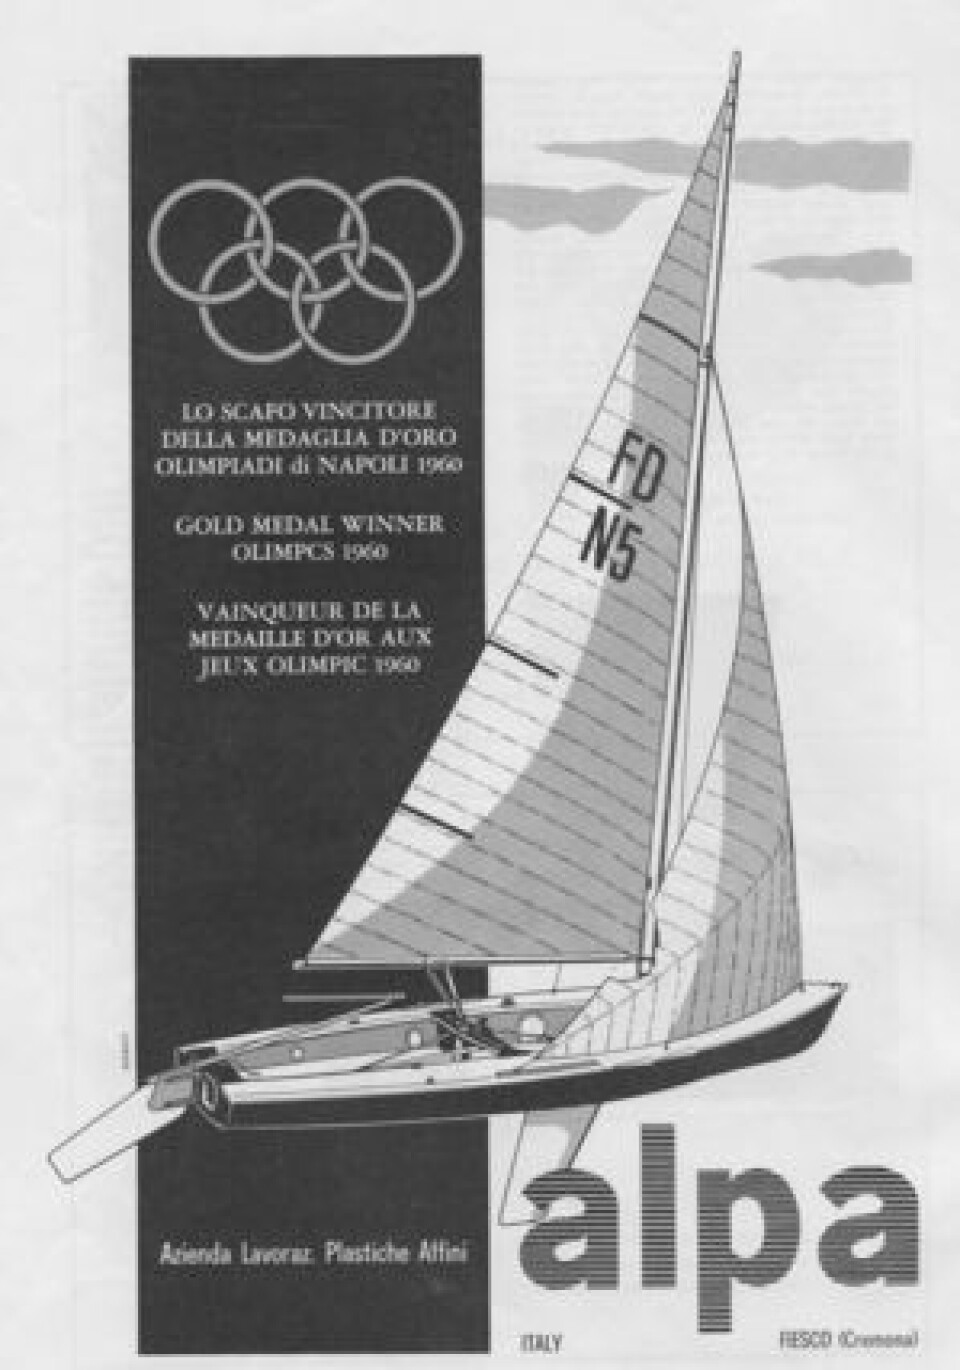 NY: Flying Dutchman i plast var en ny oppfinnelse i 1960, og da Peder Lunde jr. og Bjørn Bergvall fikk låne en slik i uttagningen, beholdt de den. Under OL var de de eneste som hadde plast-FD.